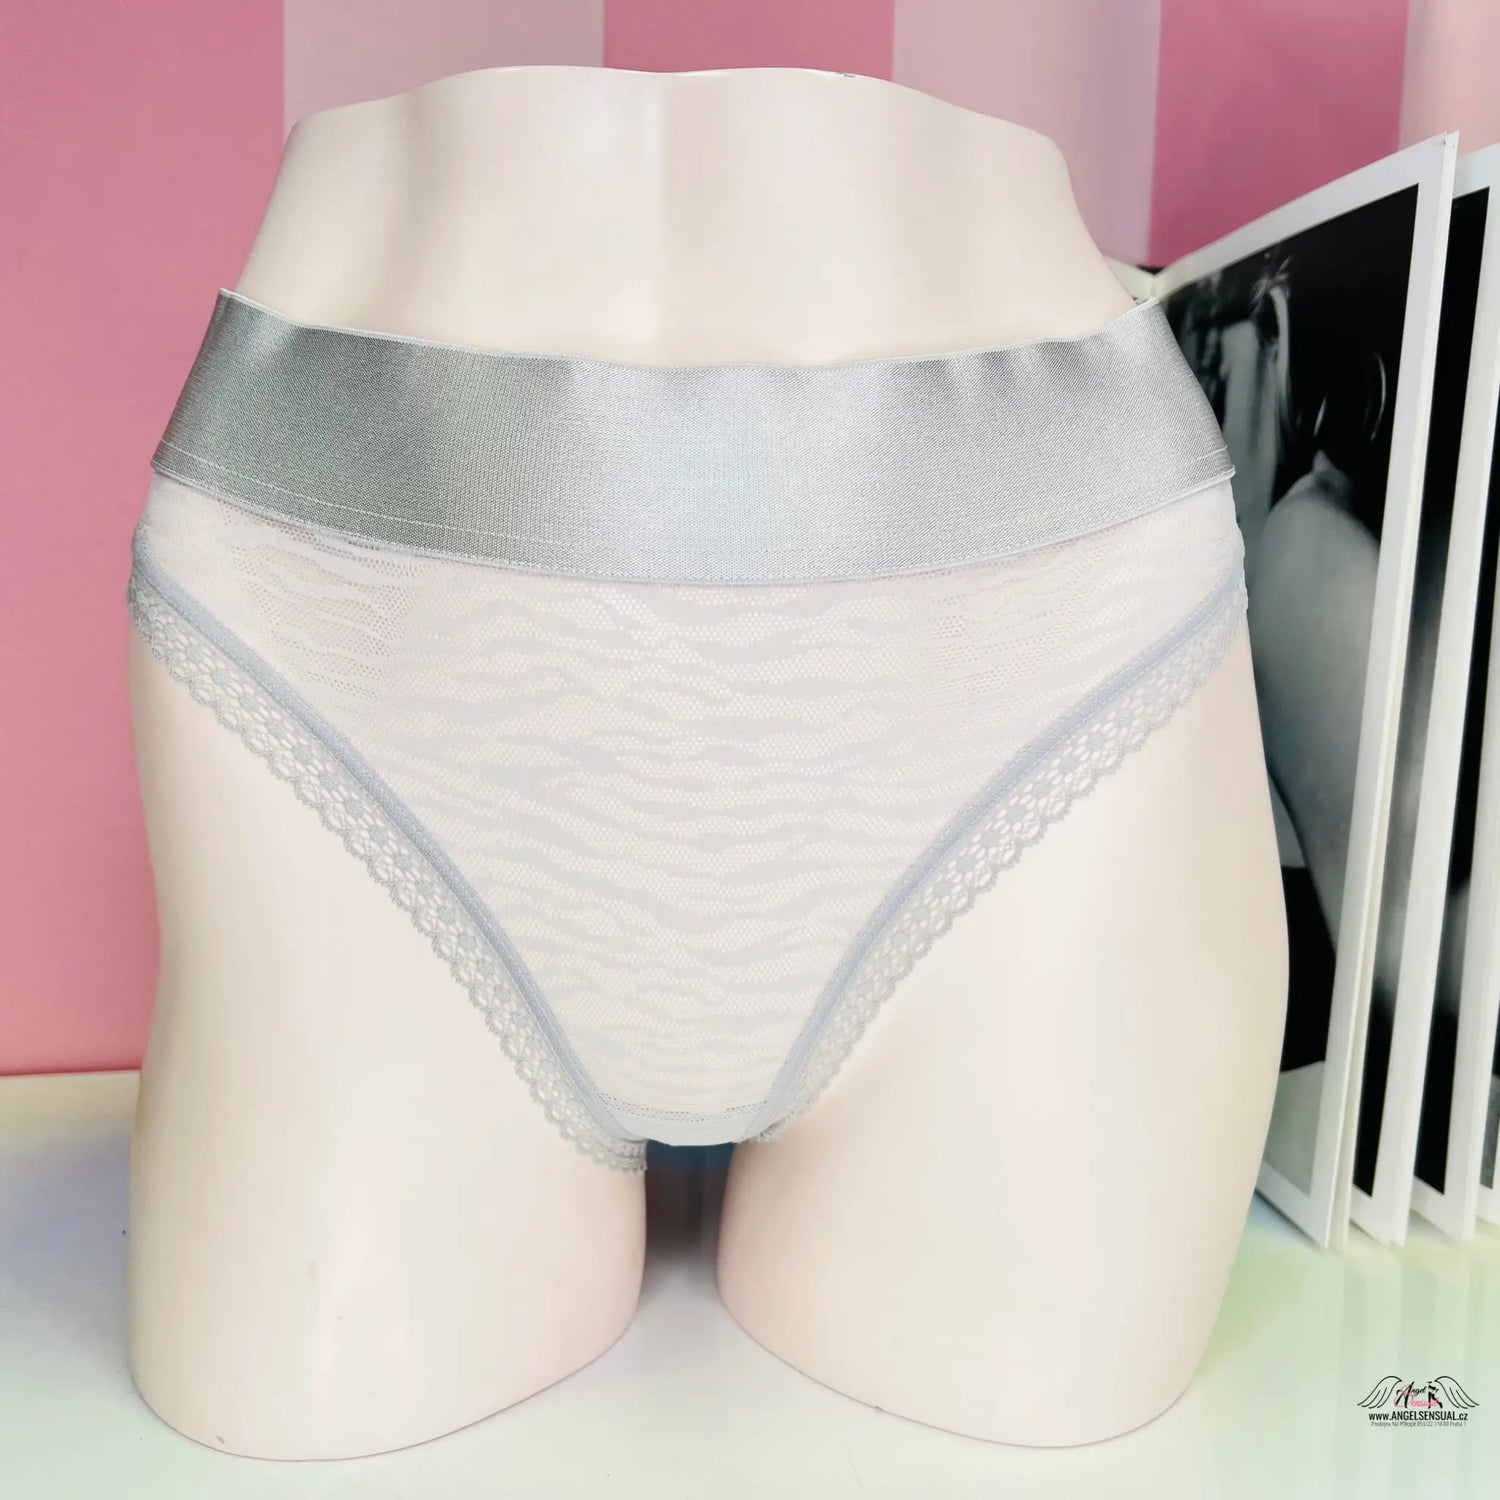 Síťované kalhotky - Stříbrná / S / Nové se štítky - Kalhotky Victoria’s Secret